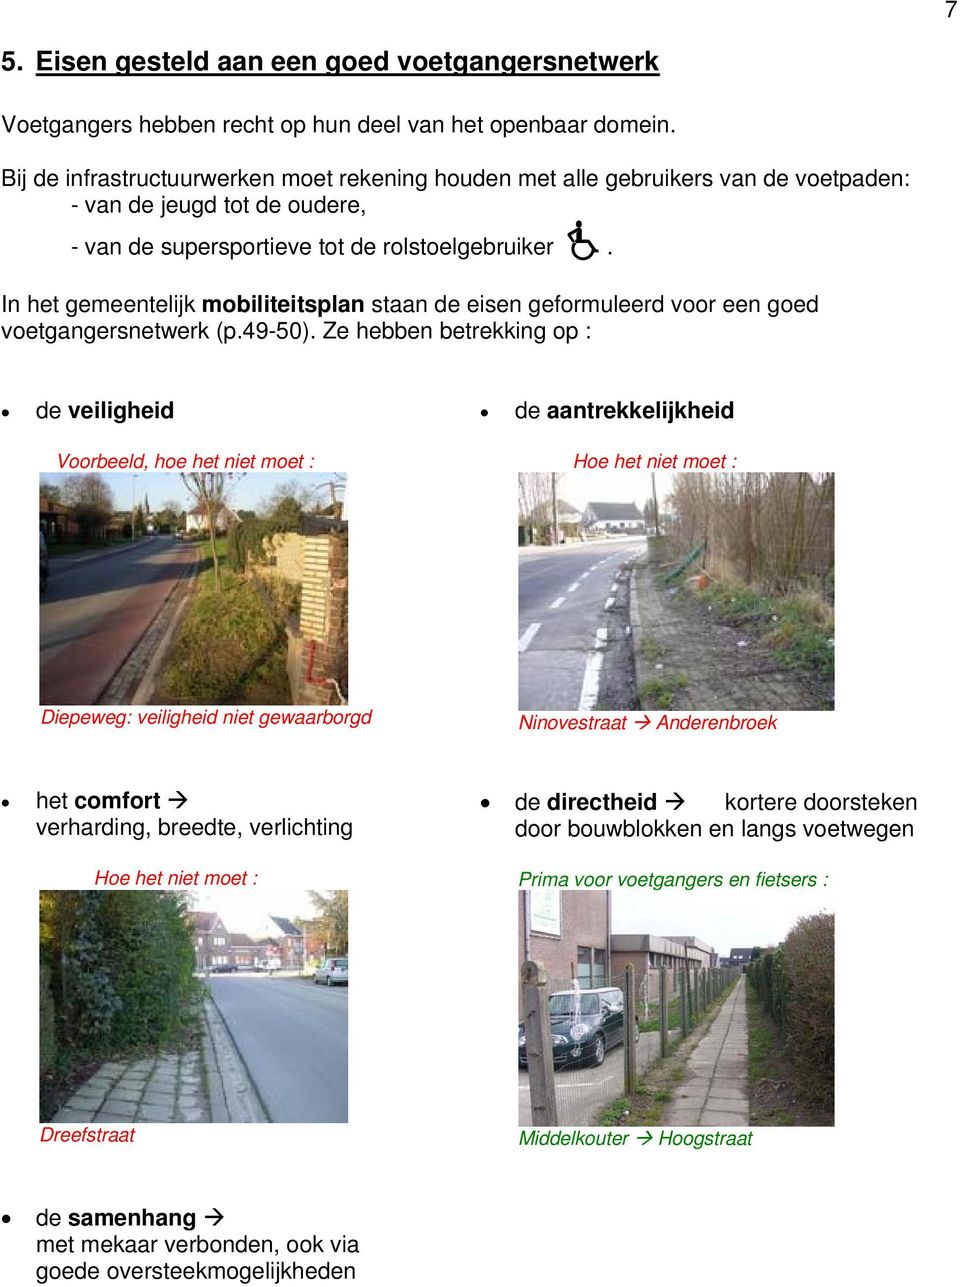 In het gemeentelijk mobiliteitsplan staan de eisen geformuleerd voor een goed voetgangersnetwerk (p.49-50).